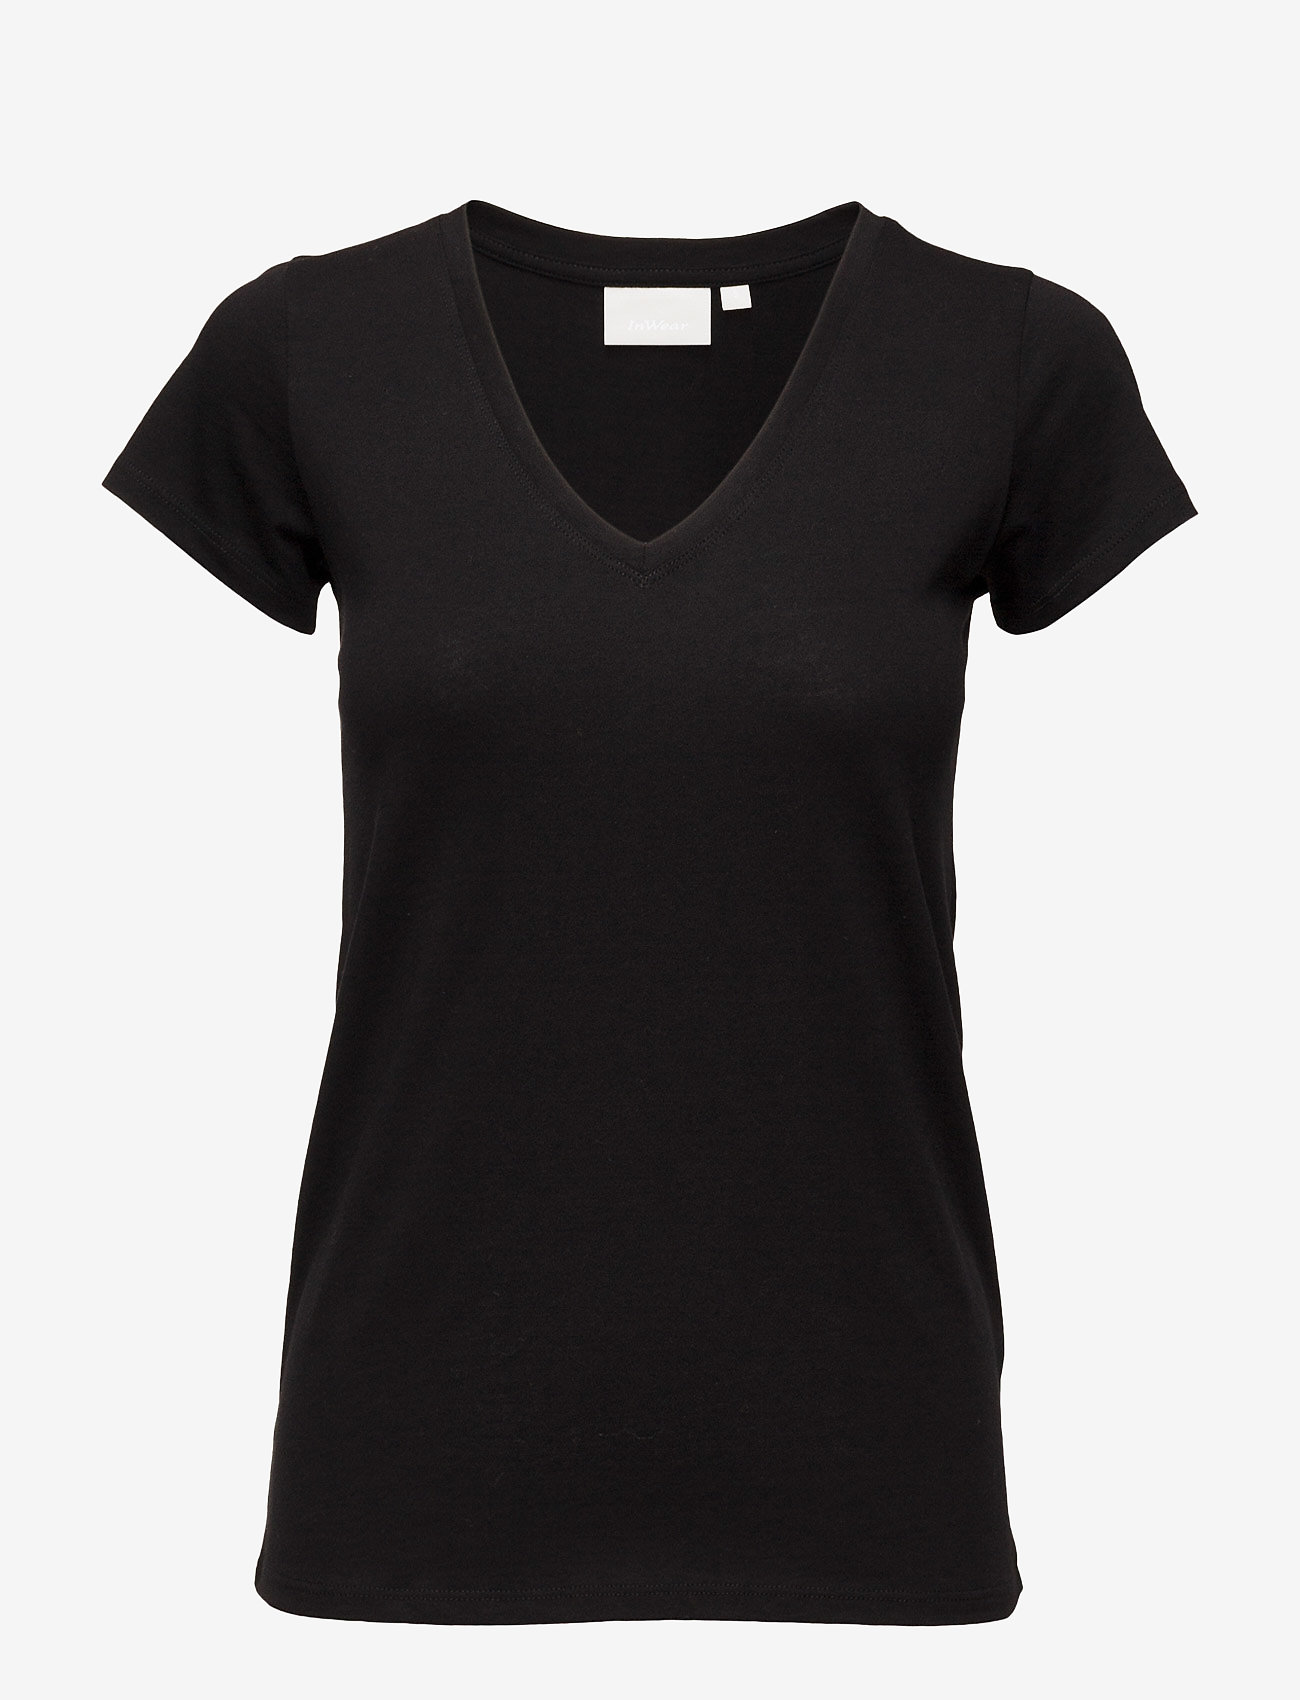 InWear - Rena V Tshirt KNTG - t-shirt & tops - black - 1